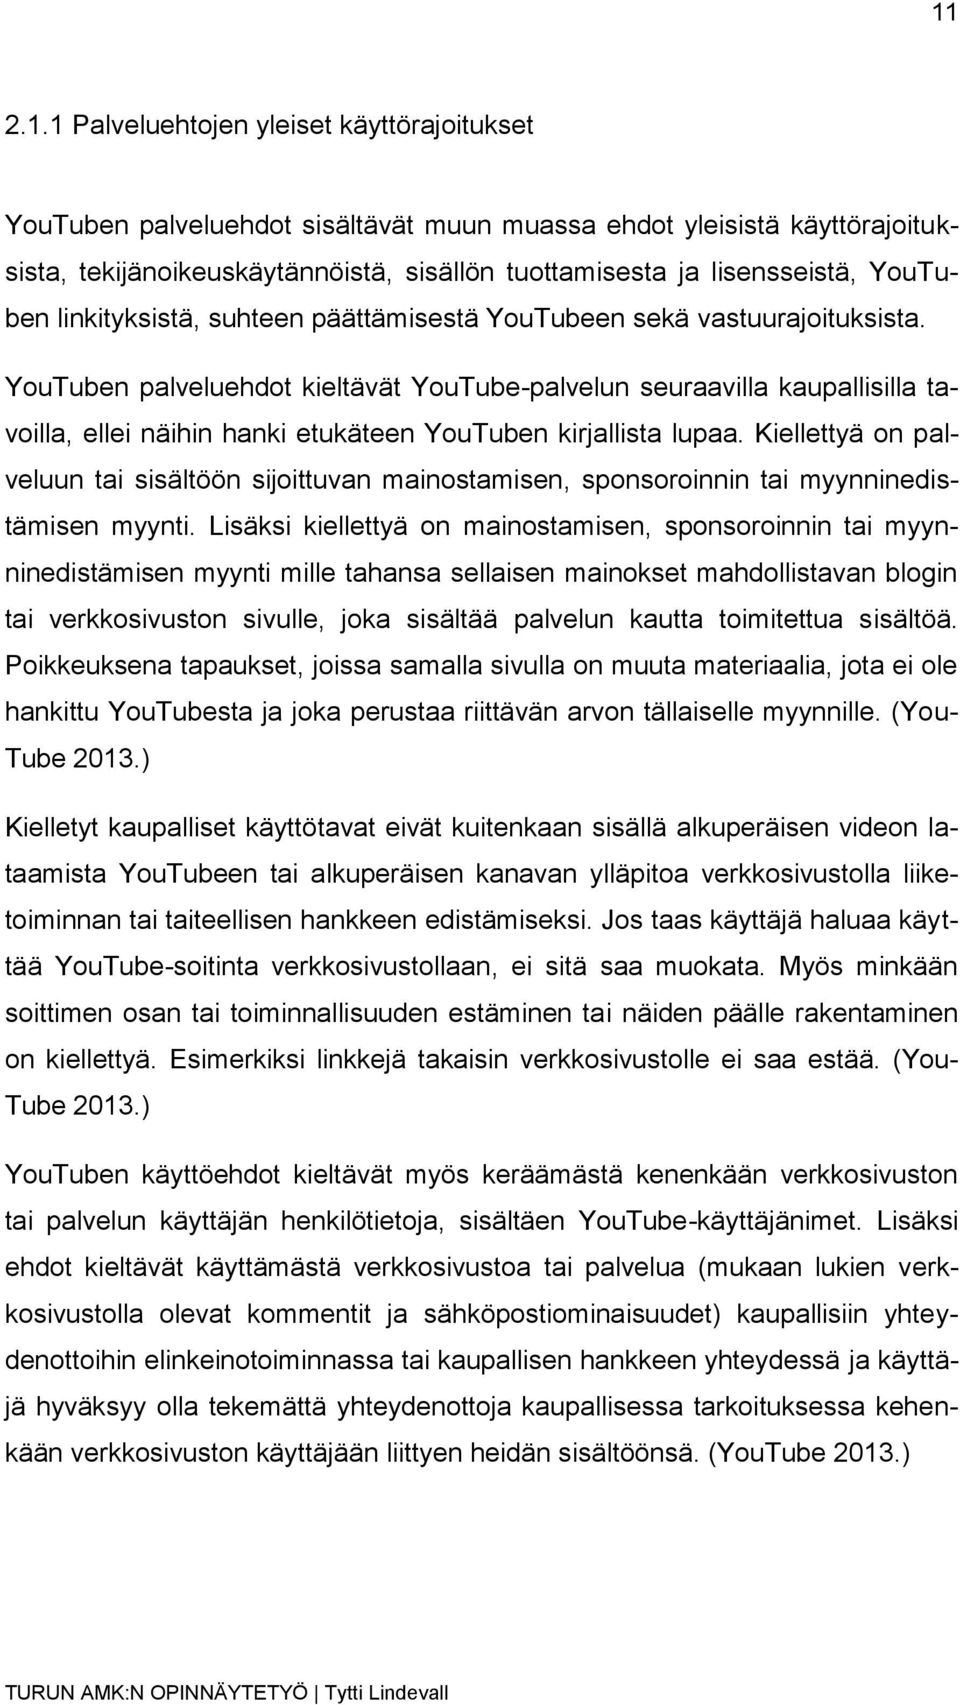 YouTuben palveluehdot kieltävät YouTube-palvelun seuraavilla kaupallisilla tavoilla, ellei näihin hanki etukäteen YouTuben kirjallista lupaa.